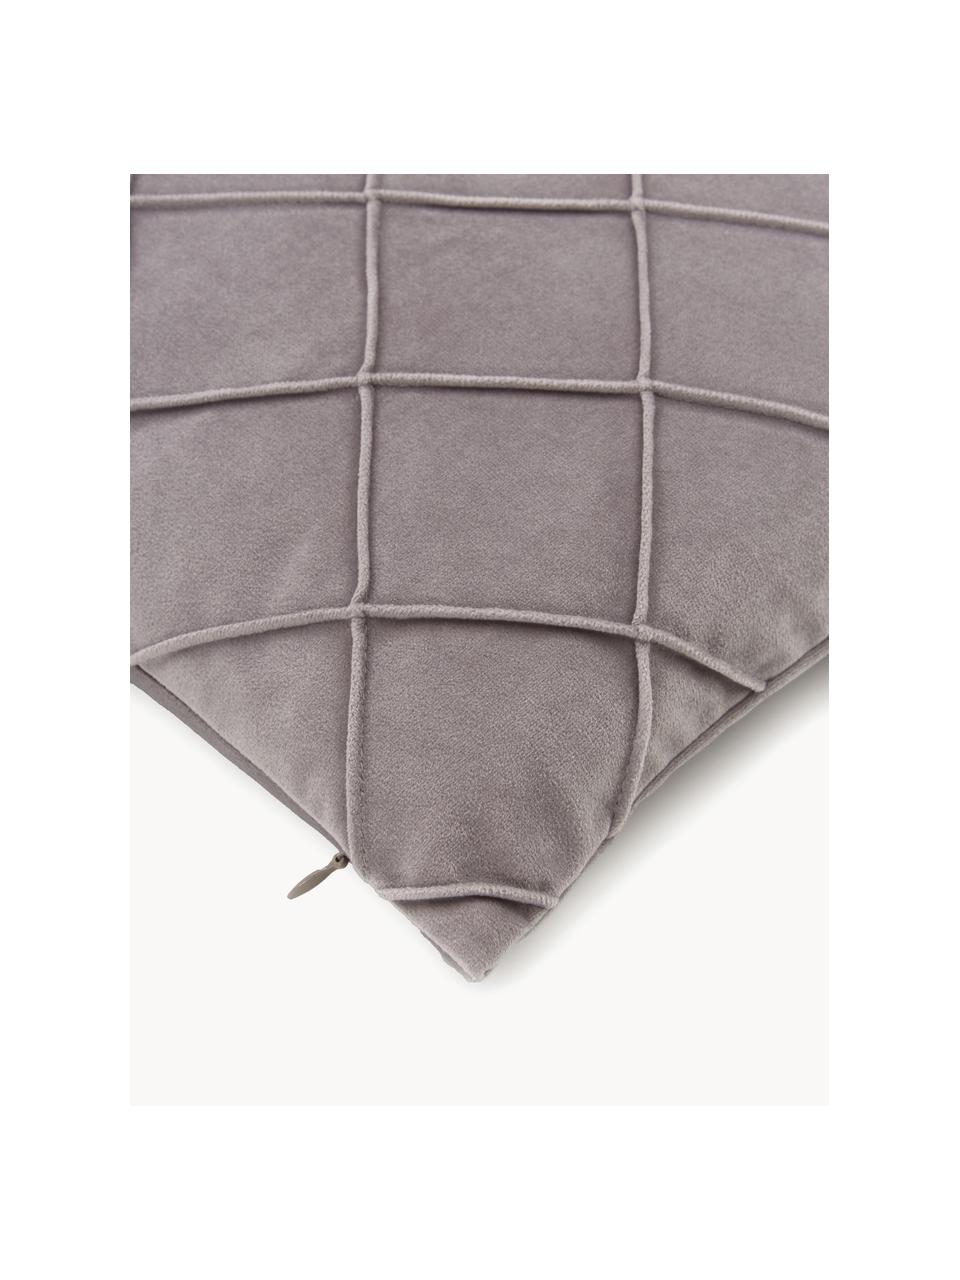 Fluwelen kussenhoes Luka met gestructureerd ruitpatroon, Fluweel (100% polyester), Grijs, B 40 x L 40 cm